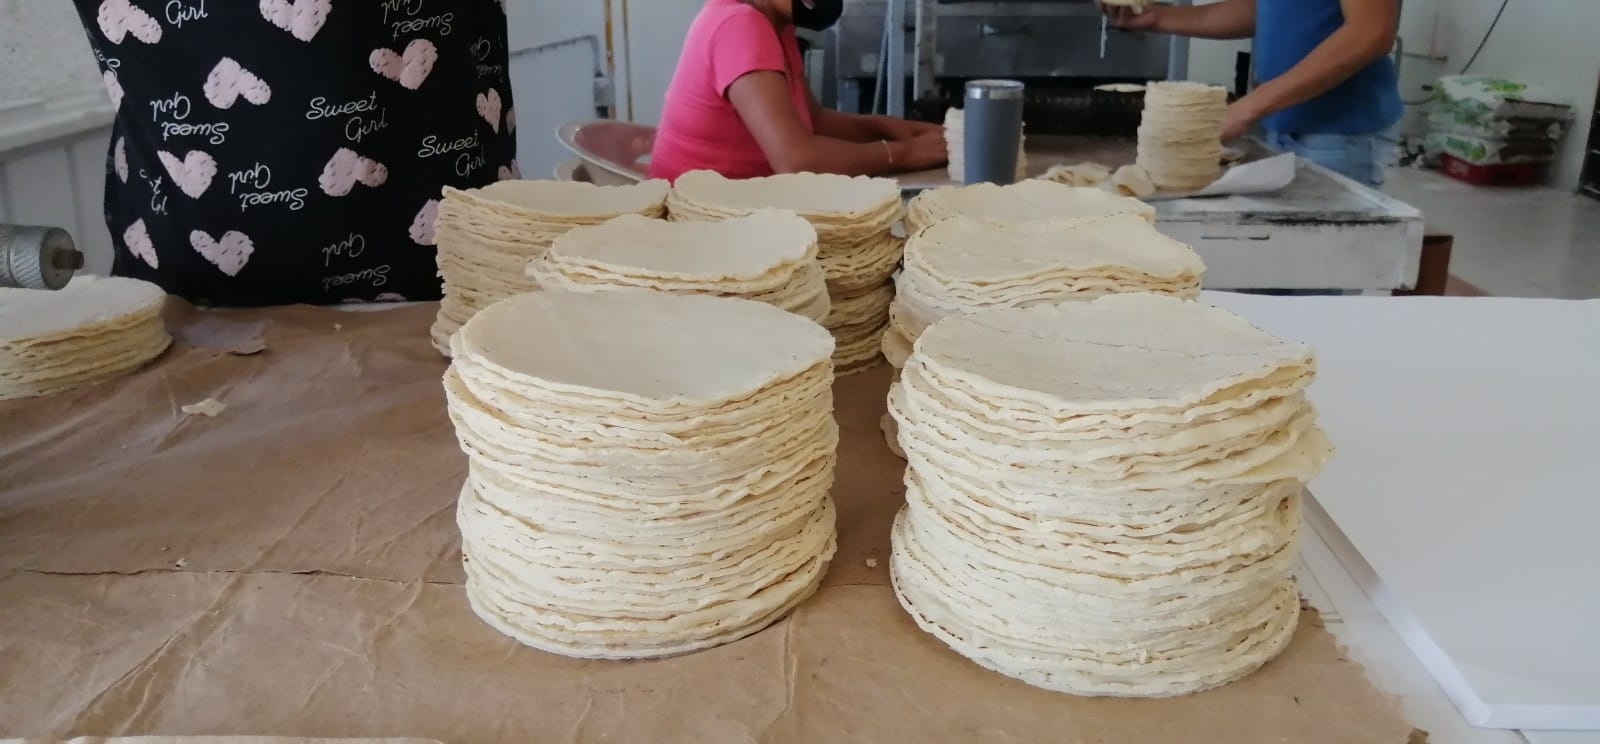 El precio de la tortilla depende mucho de la zona, incluso hay quienes la vende hasta 6 pesos más caro